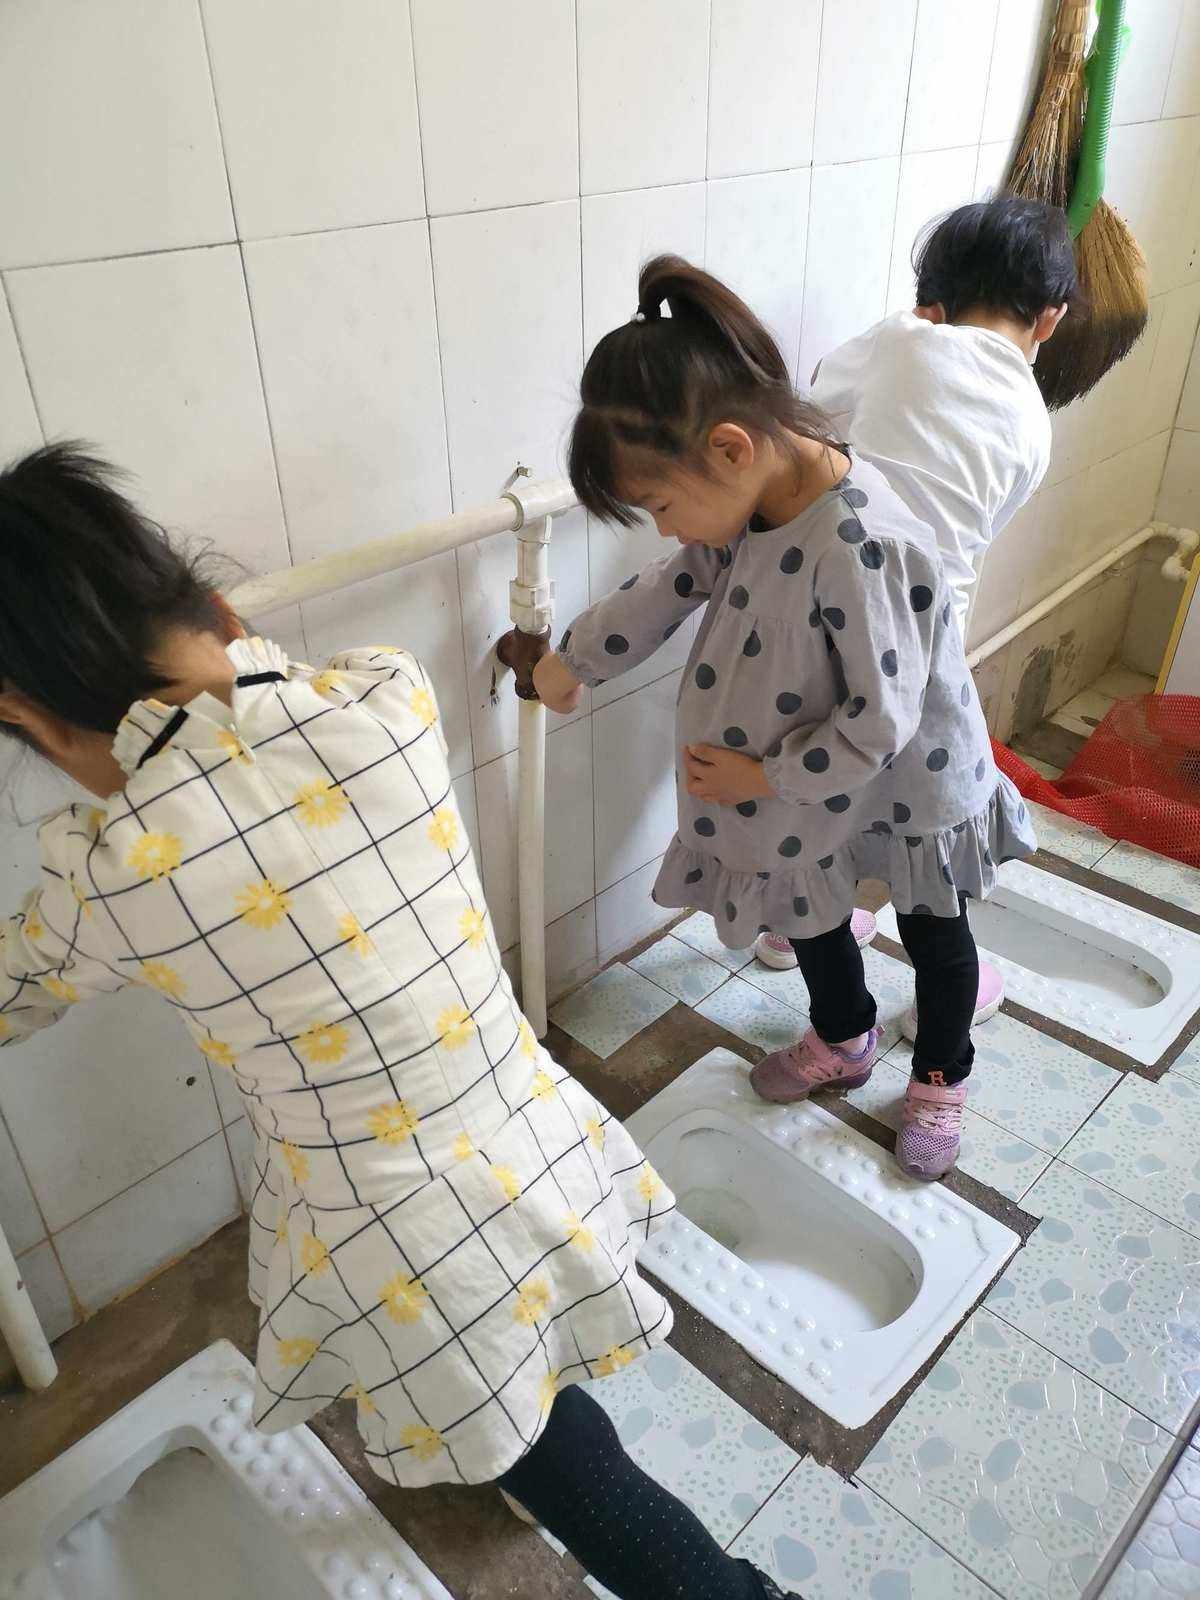 小女孩蹲厕所-图库-五毛网